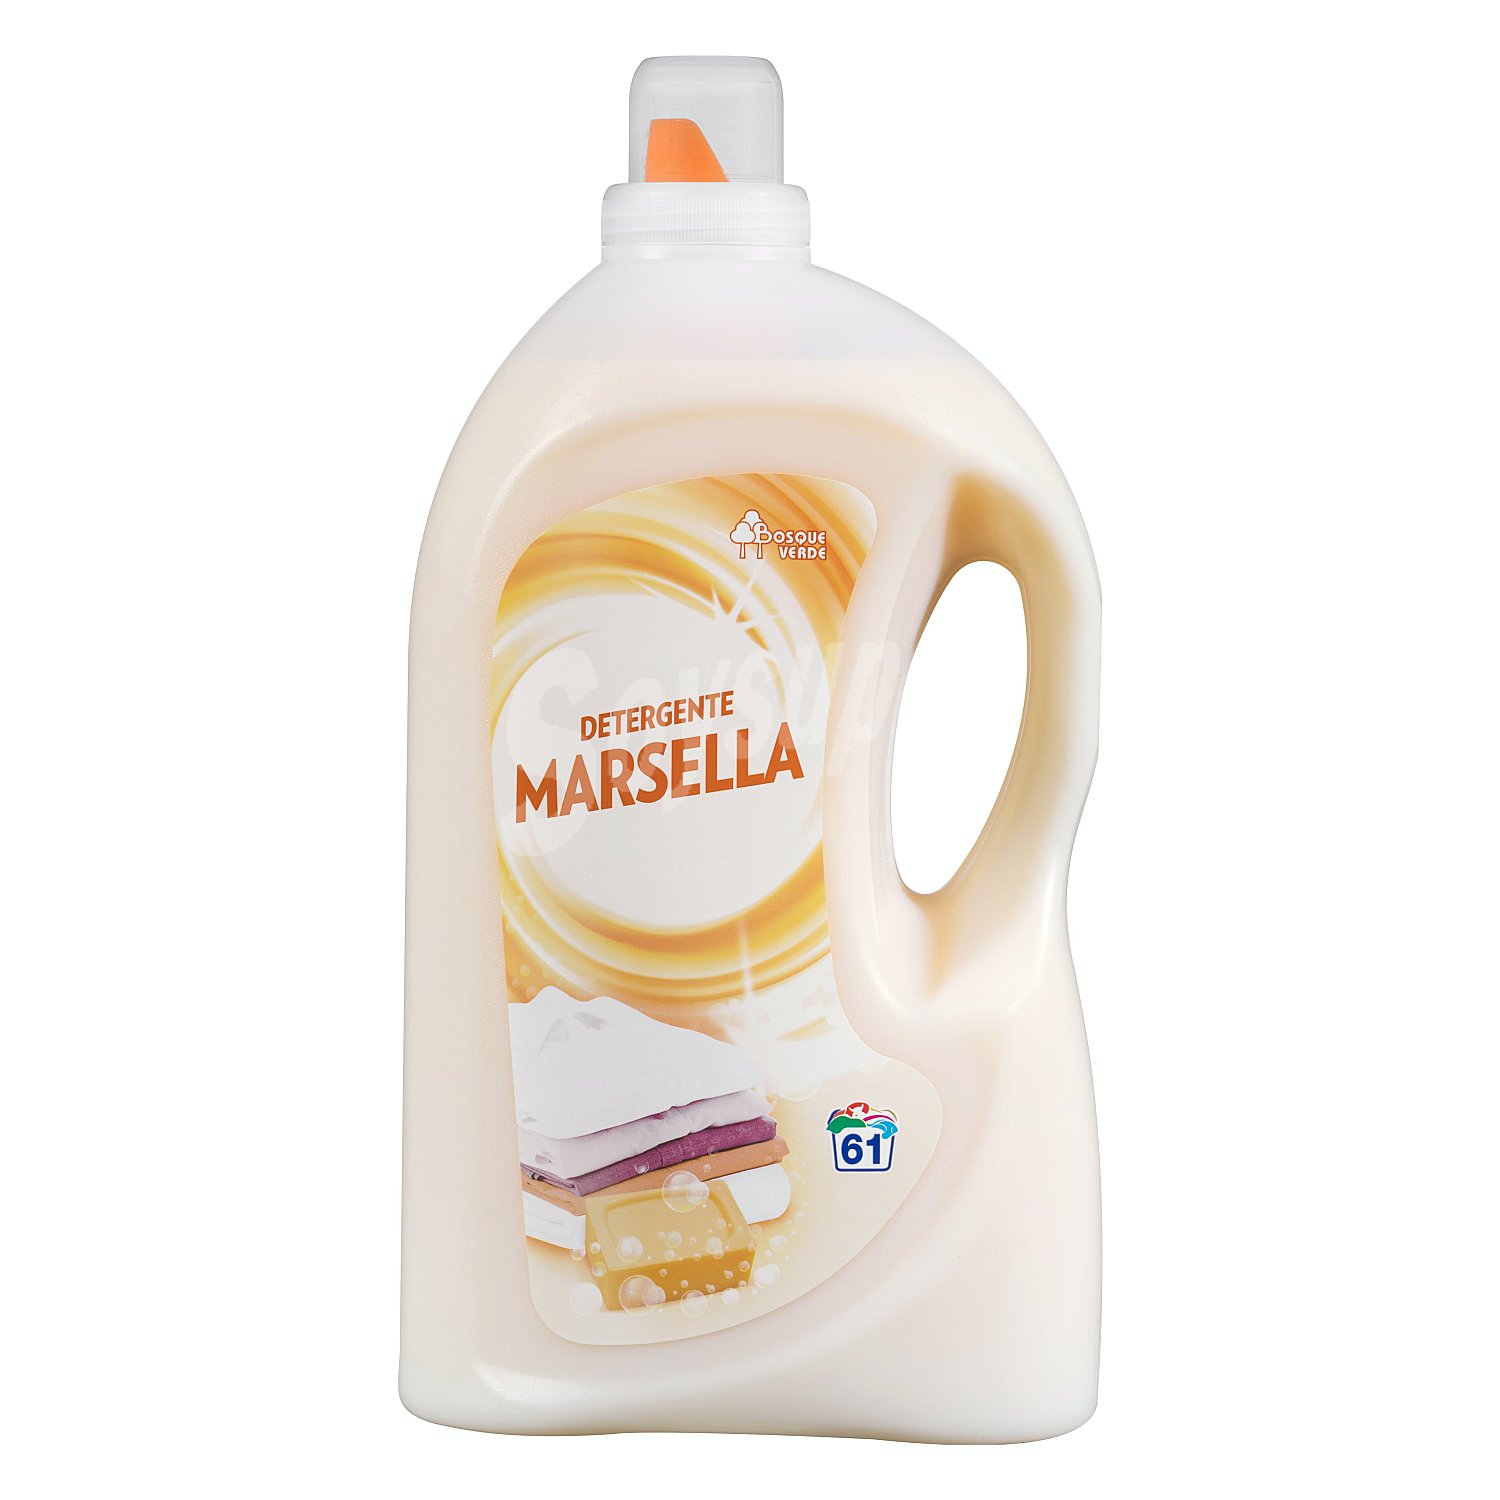 Detergente Marsella Mercadona